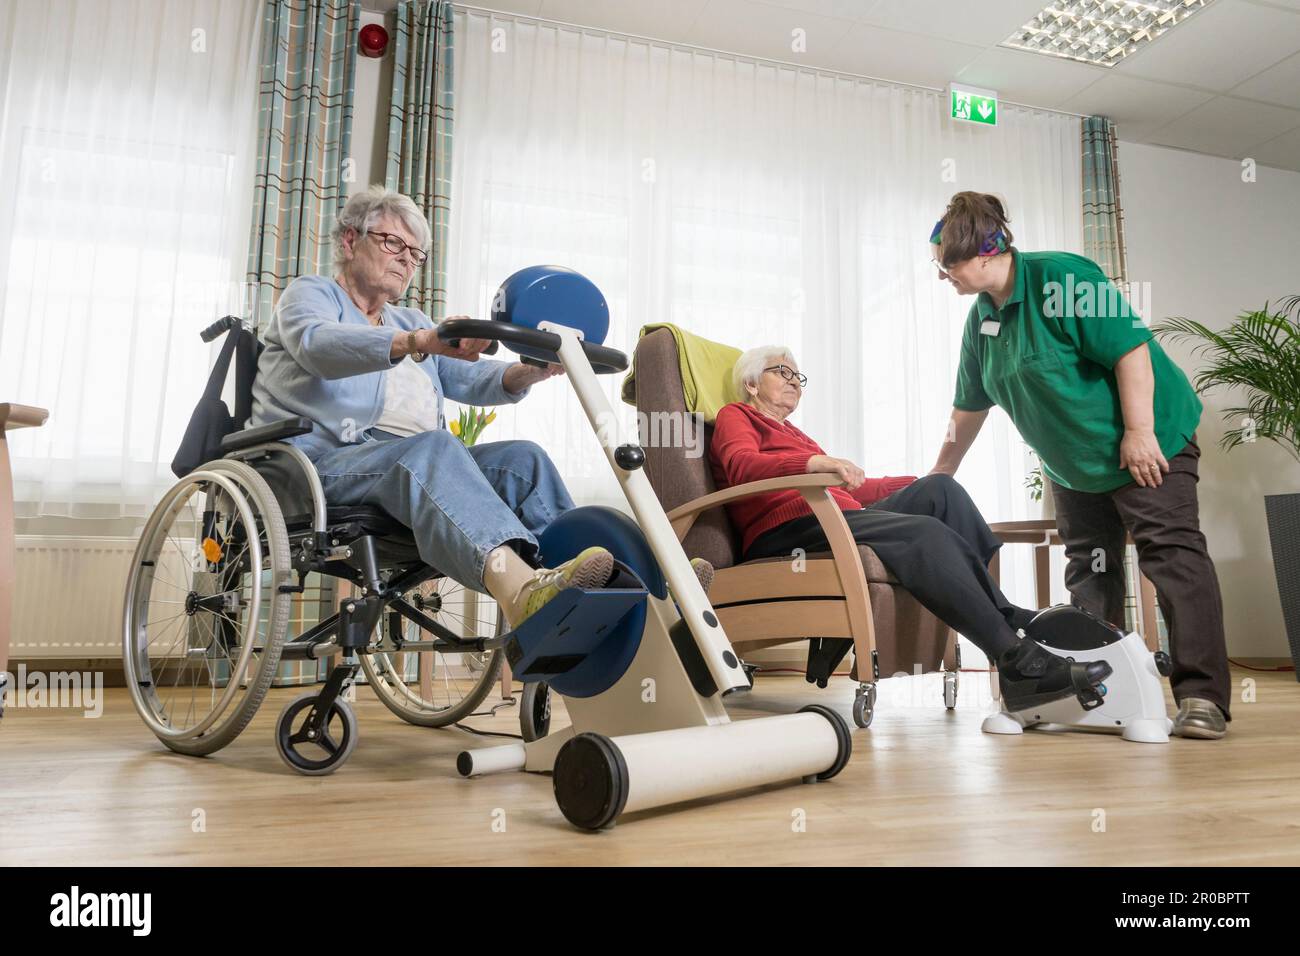 Infirmière avec des femmes âgées s'exerçant sur un vélo d'exercice dans la maison de repos Banque D'Images